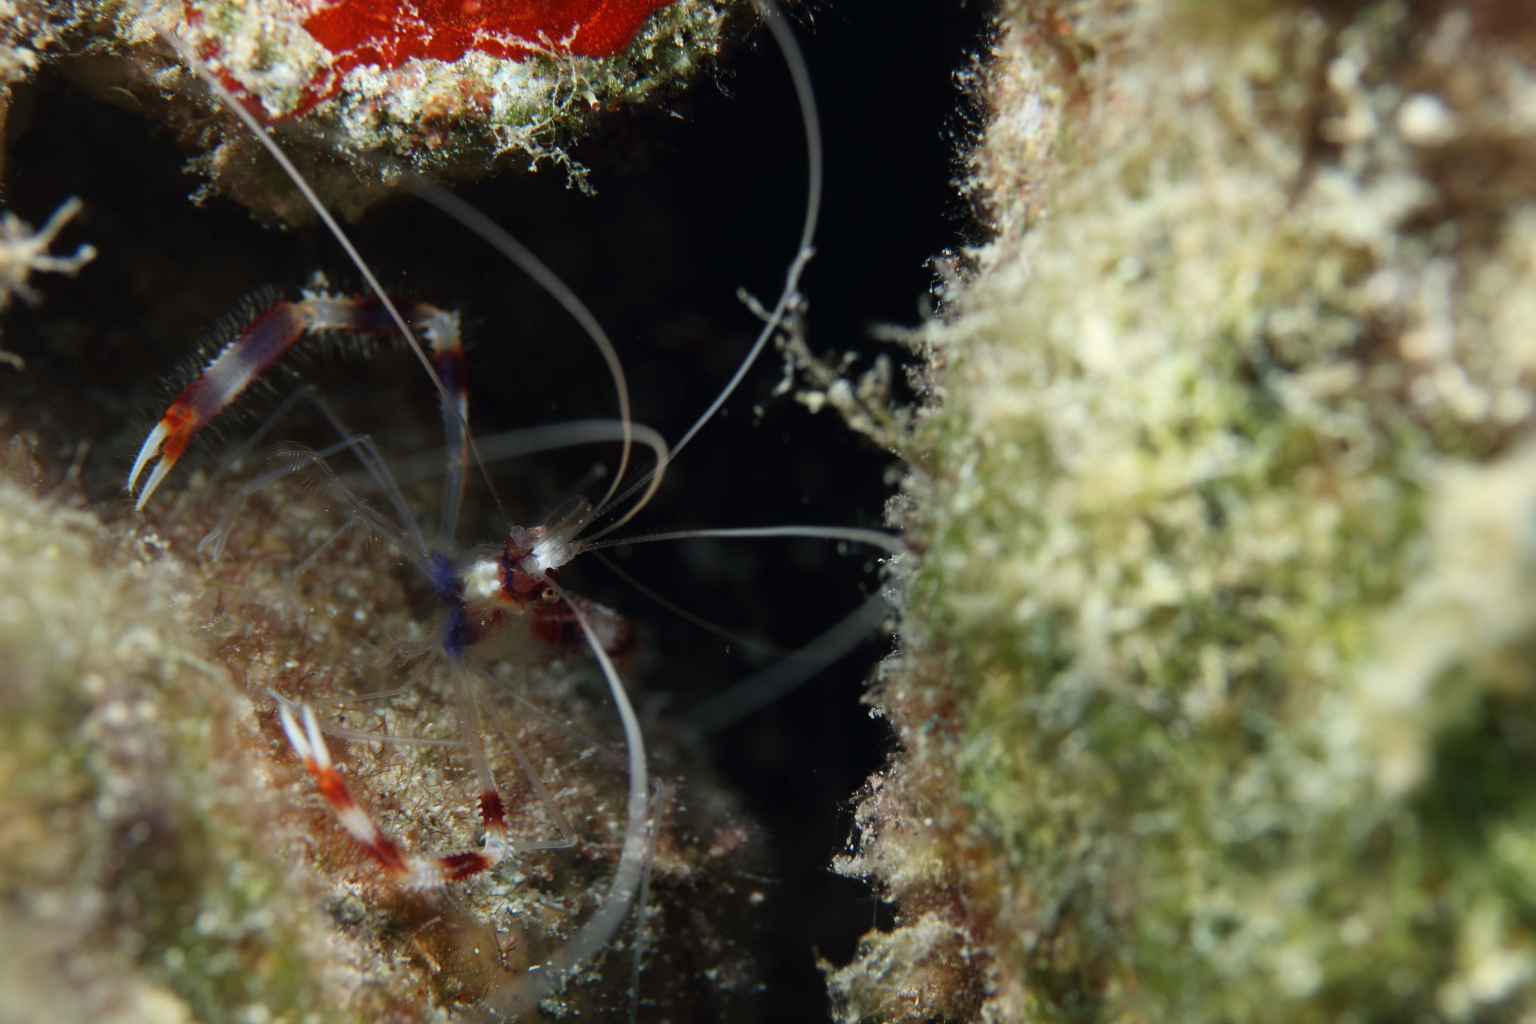 Banded Coral Shrimp (May 20, 2016)